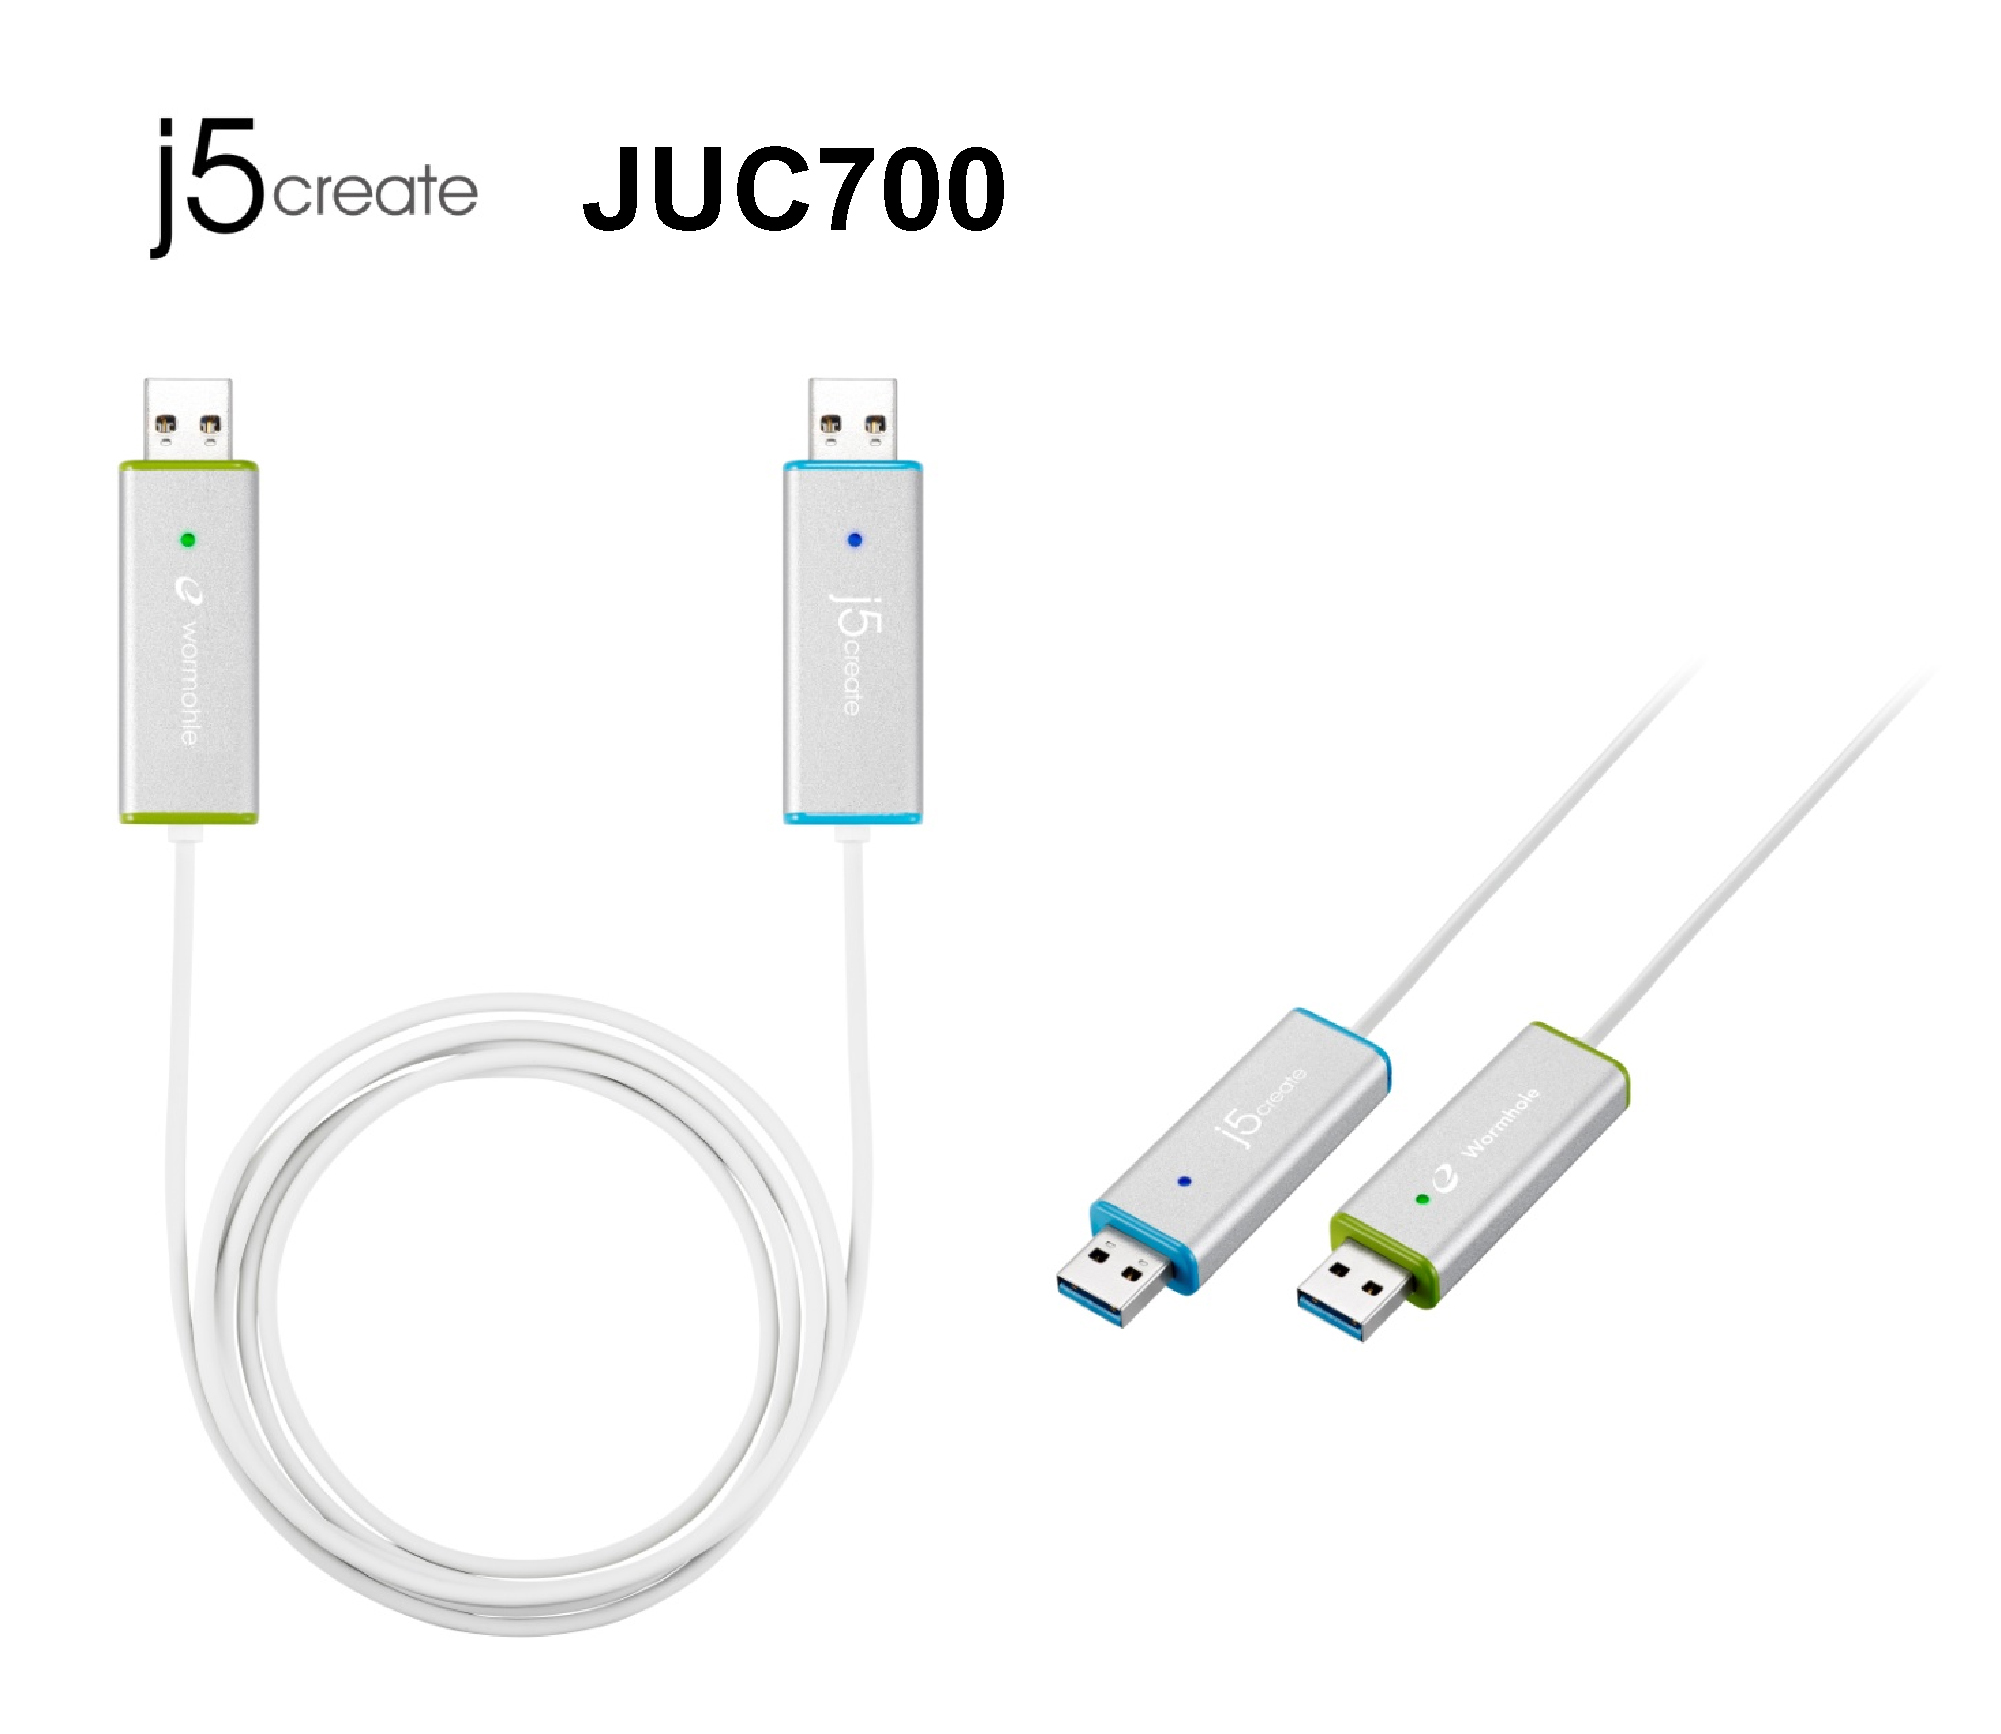 ジェイファイブ クリエイト 世界初 注 ディスプレイ共有機能付きリンクケーブル ワームホールスイッチ Usb3 0 ディスプレイシェア Juc700 新発売 加賀ソルネットのプレスリリース